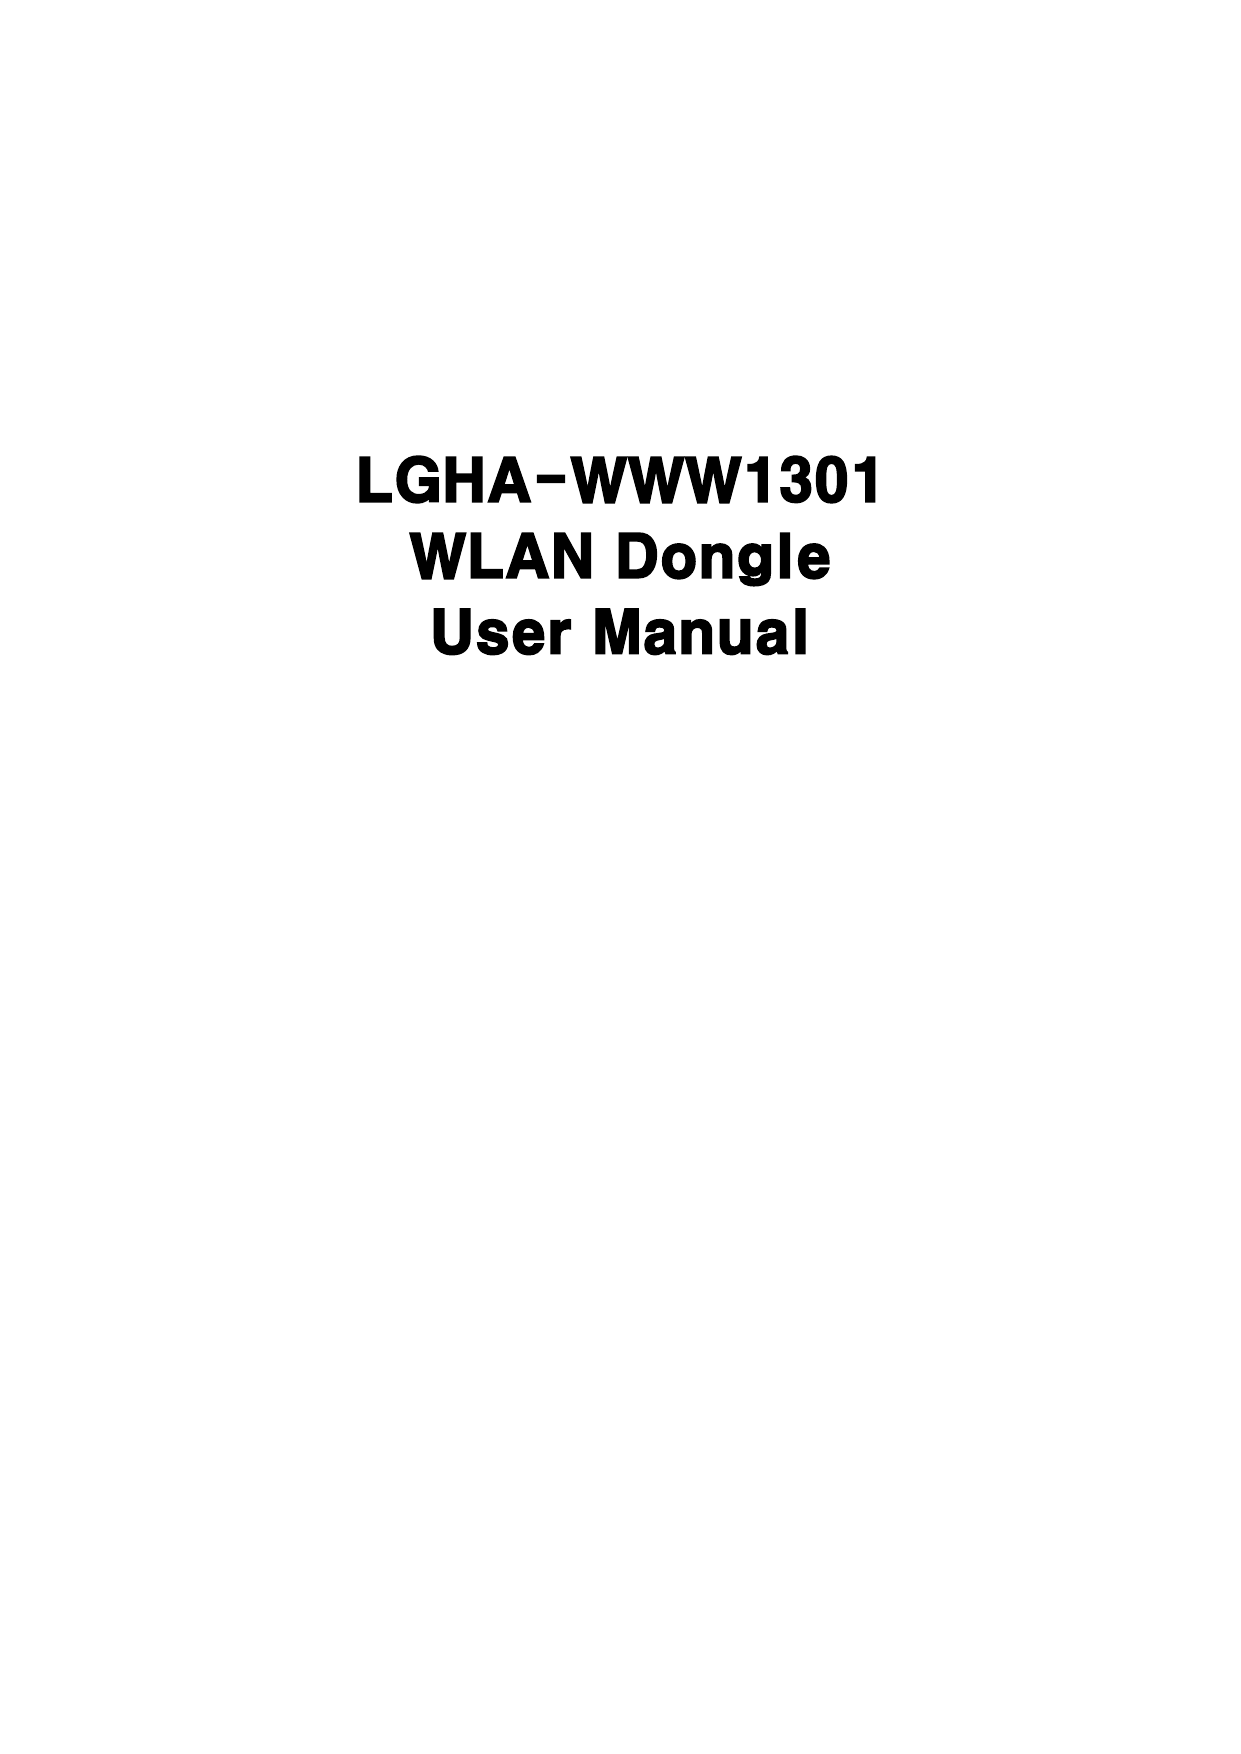             LGHA-WWW1301 WLAN Dongle User Manual                                       